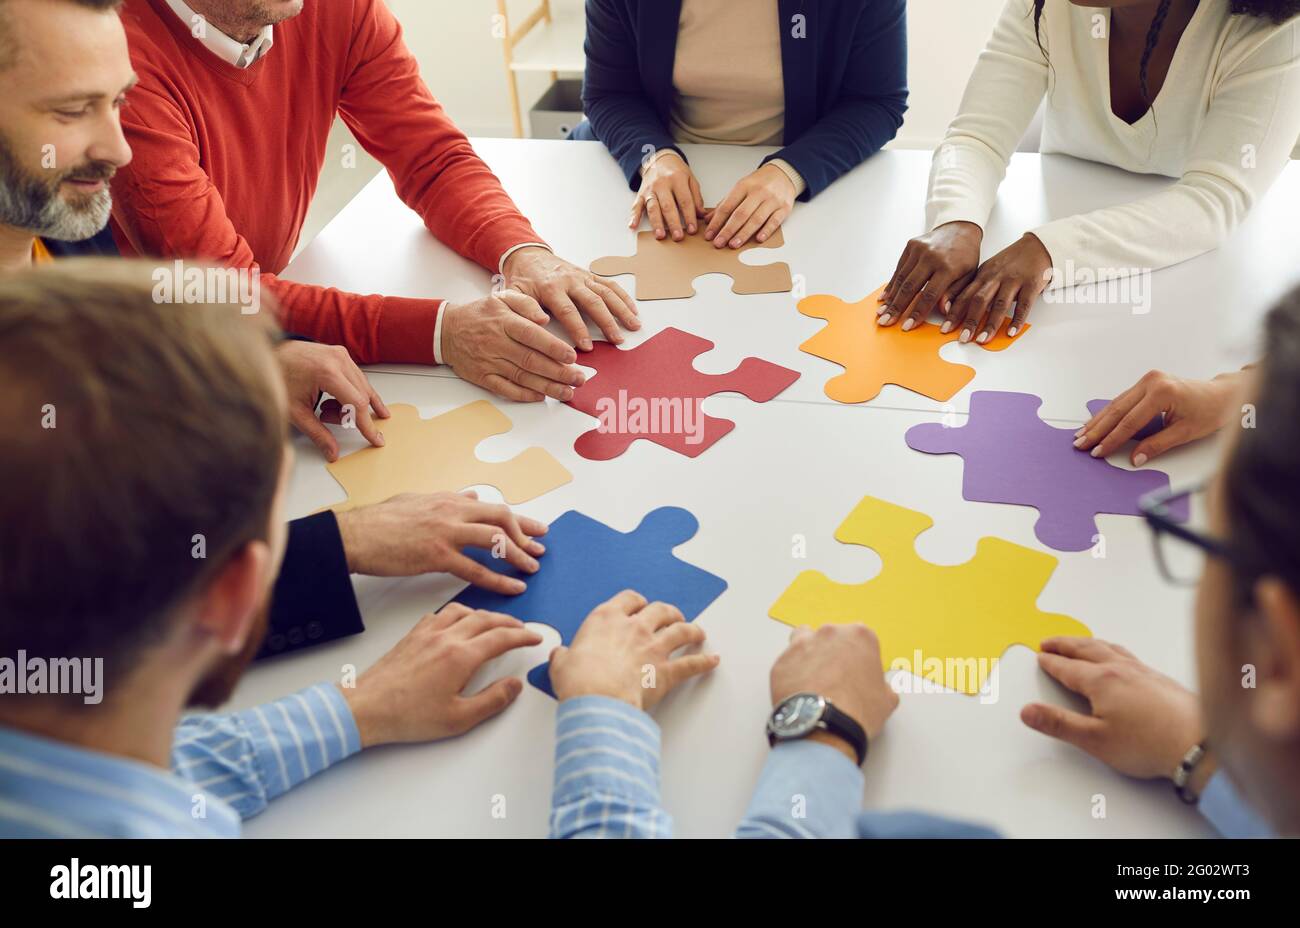 Divers groupes multiethniques collaborent à l'assemblage de pièces de puzzle ensemble Banque D'Images